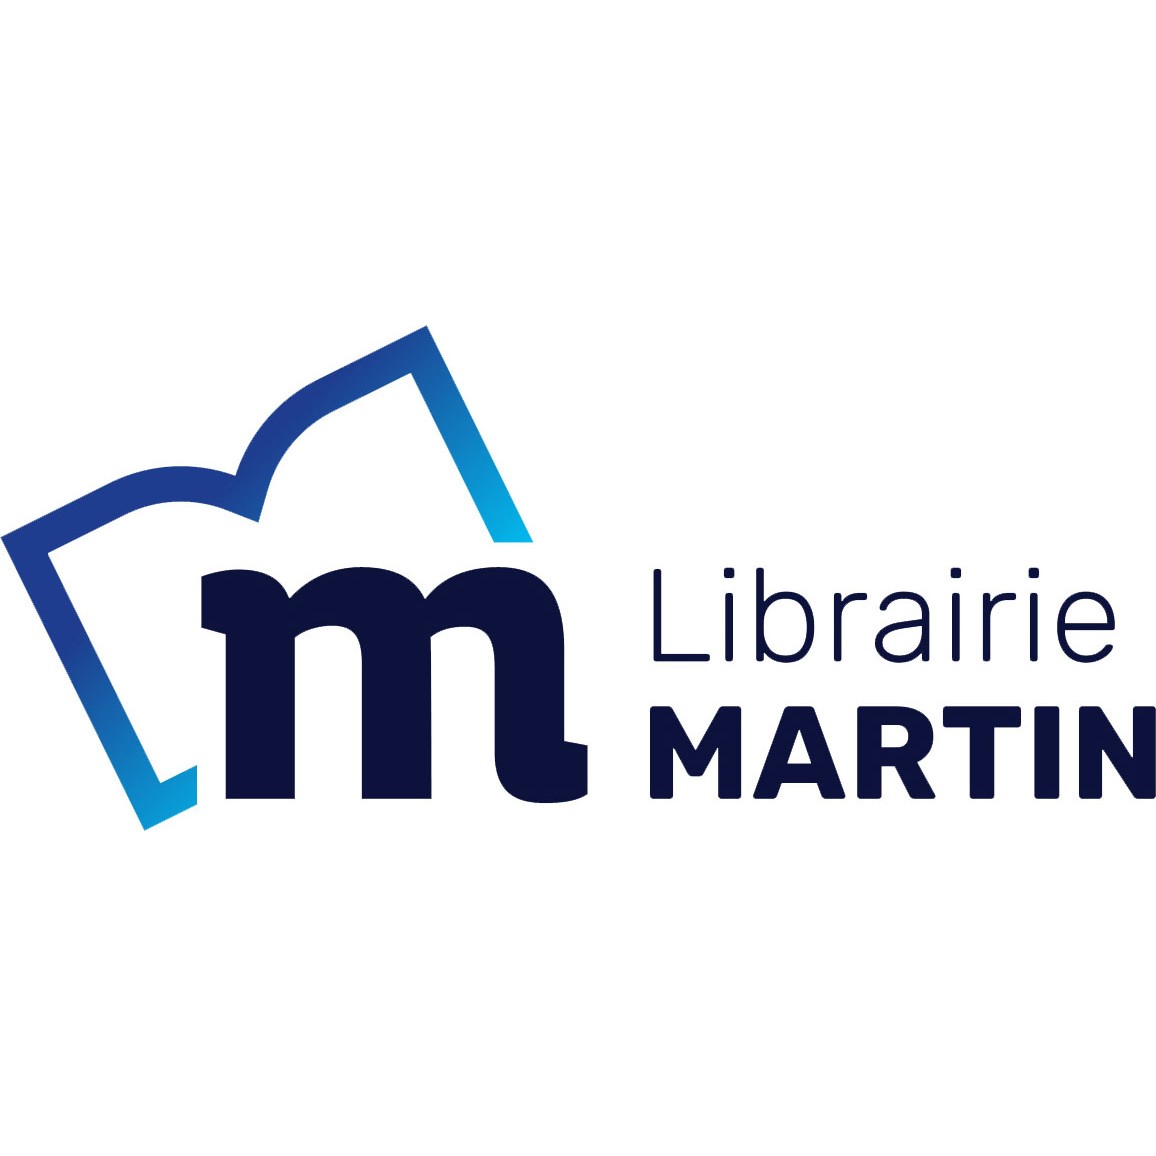 Librairie MARTIN